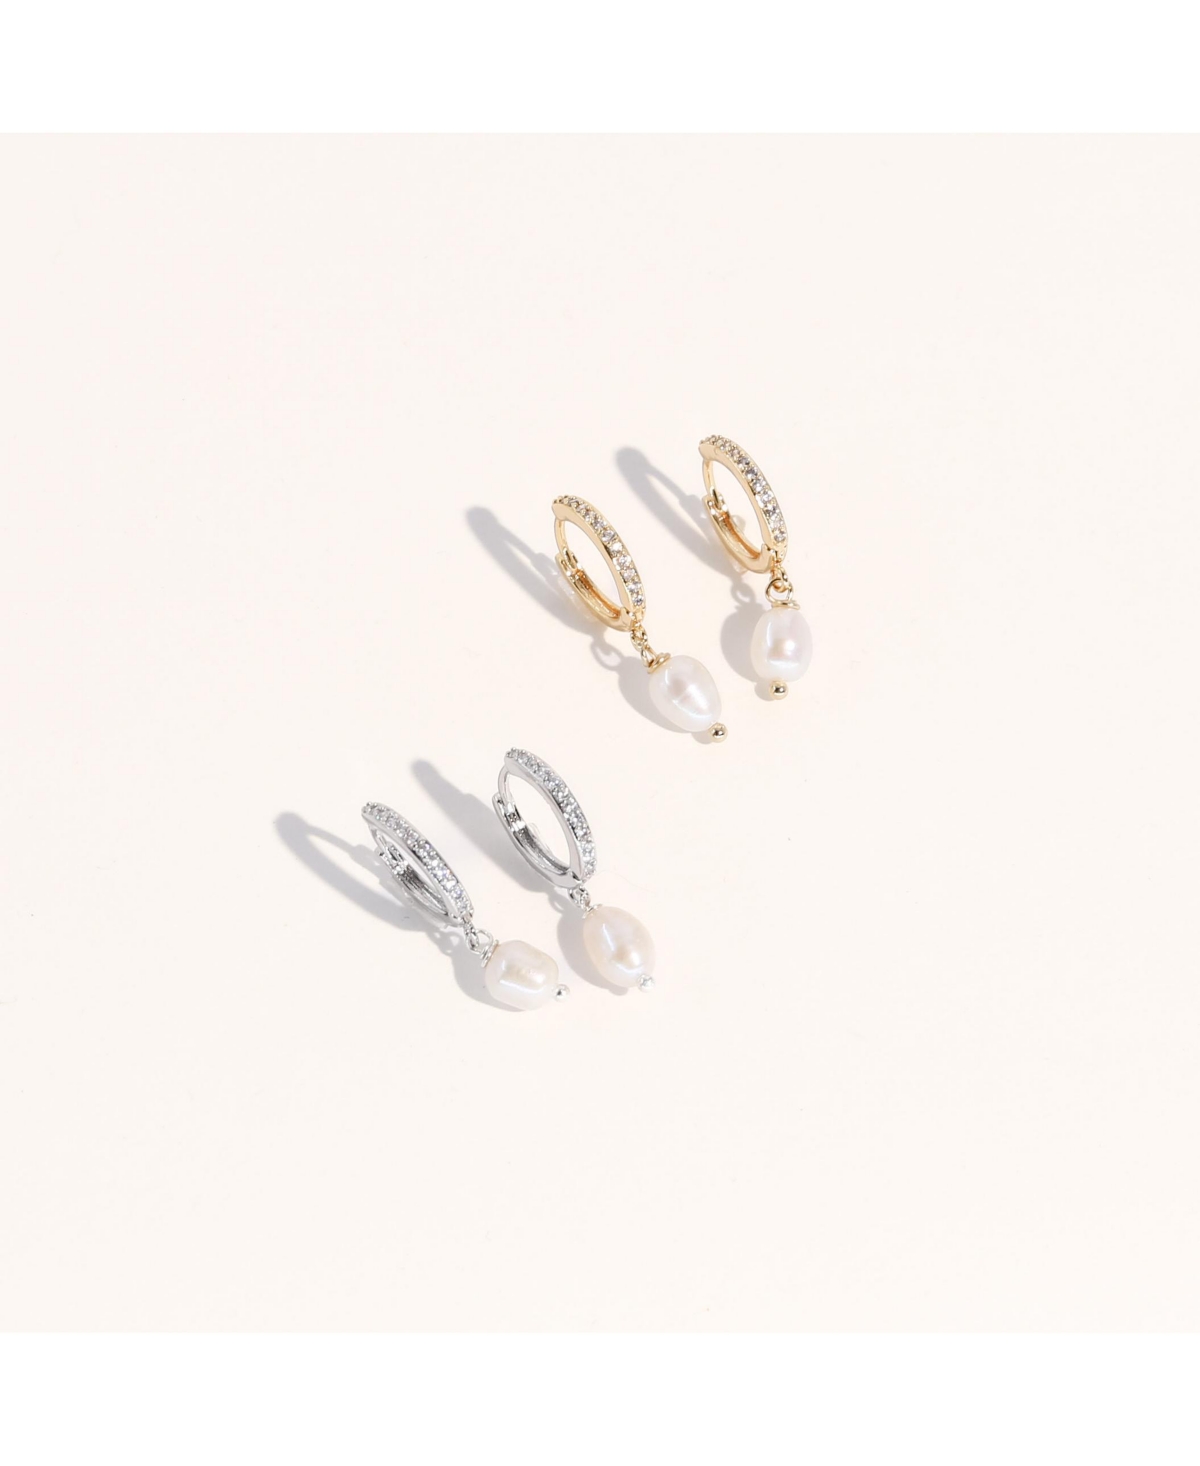 Gold & Silver Pearl Earrings Set - Layla & Lou Earrings Set - Silver, Gold, Pearl